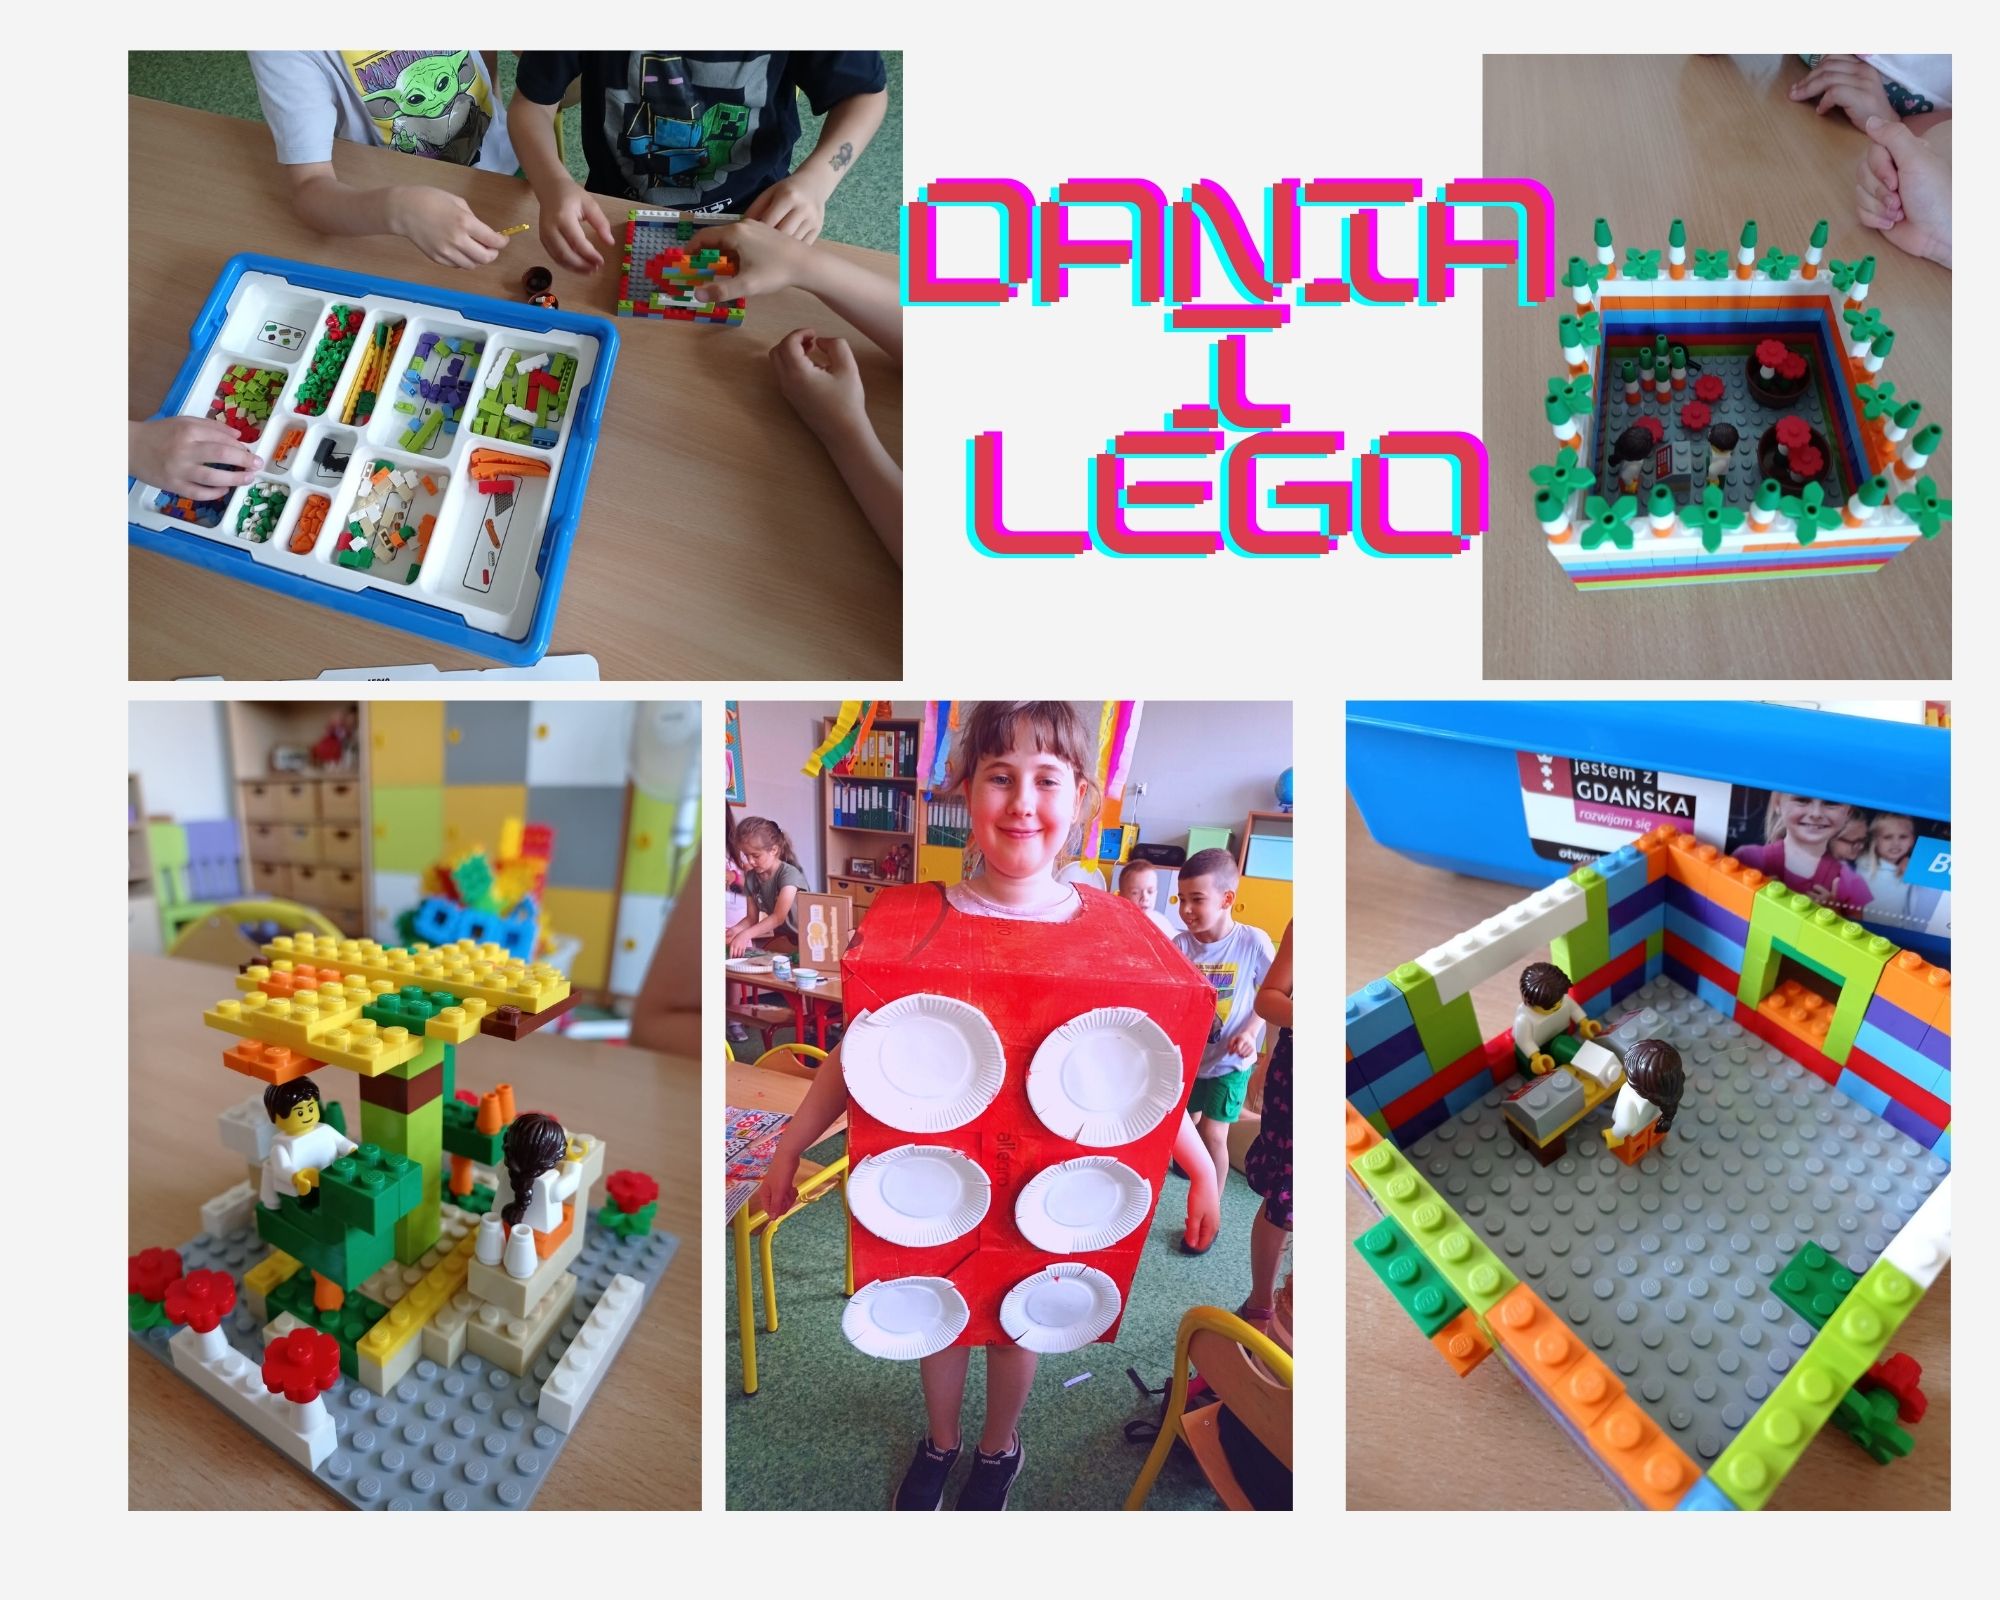 Kolaż zdjęć z pracami uczniów - konstukcje z klacków Lego. Na środkowym zdjęciu dziewczynka przbrana jest za duży czerwono-biały klocek Lego.